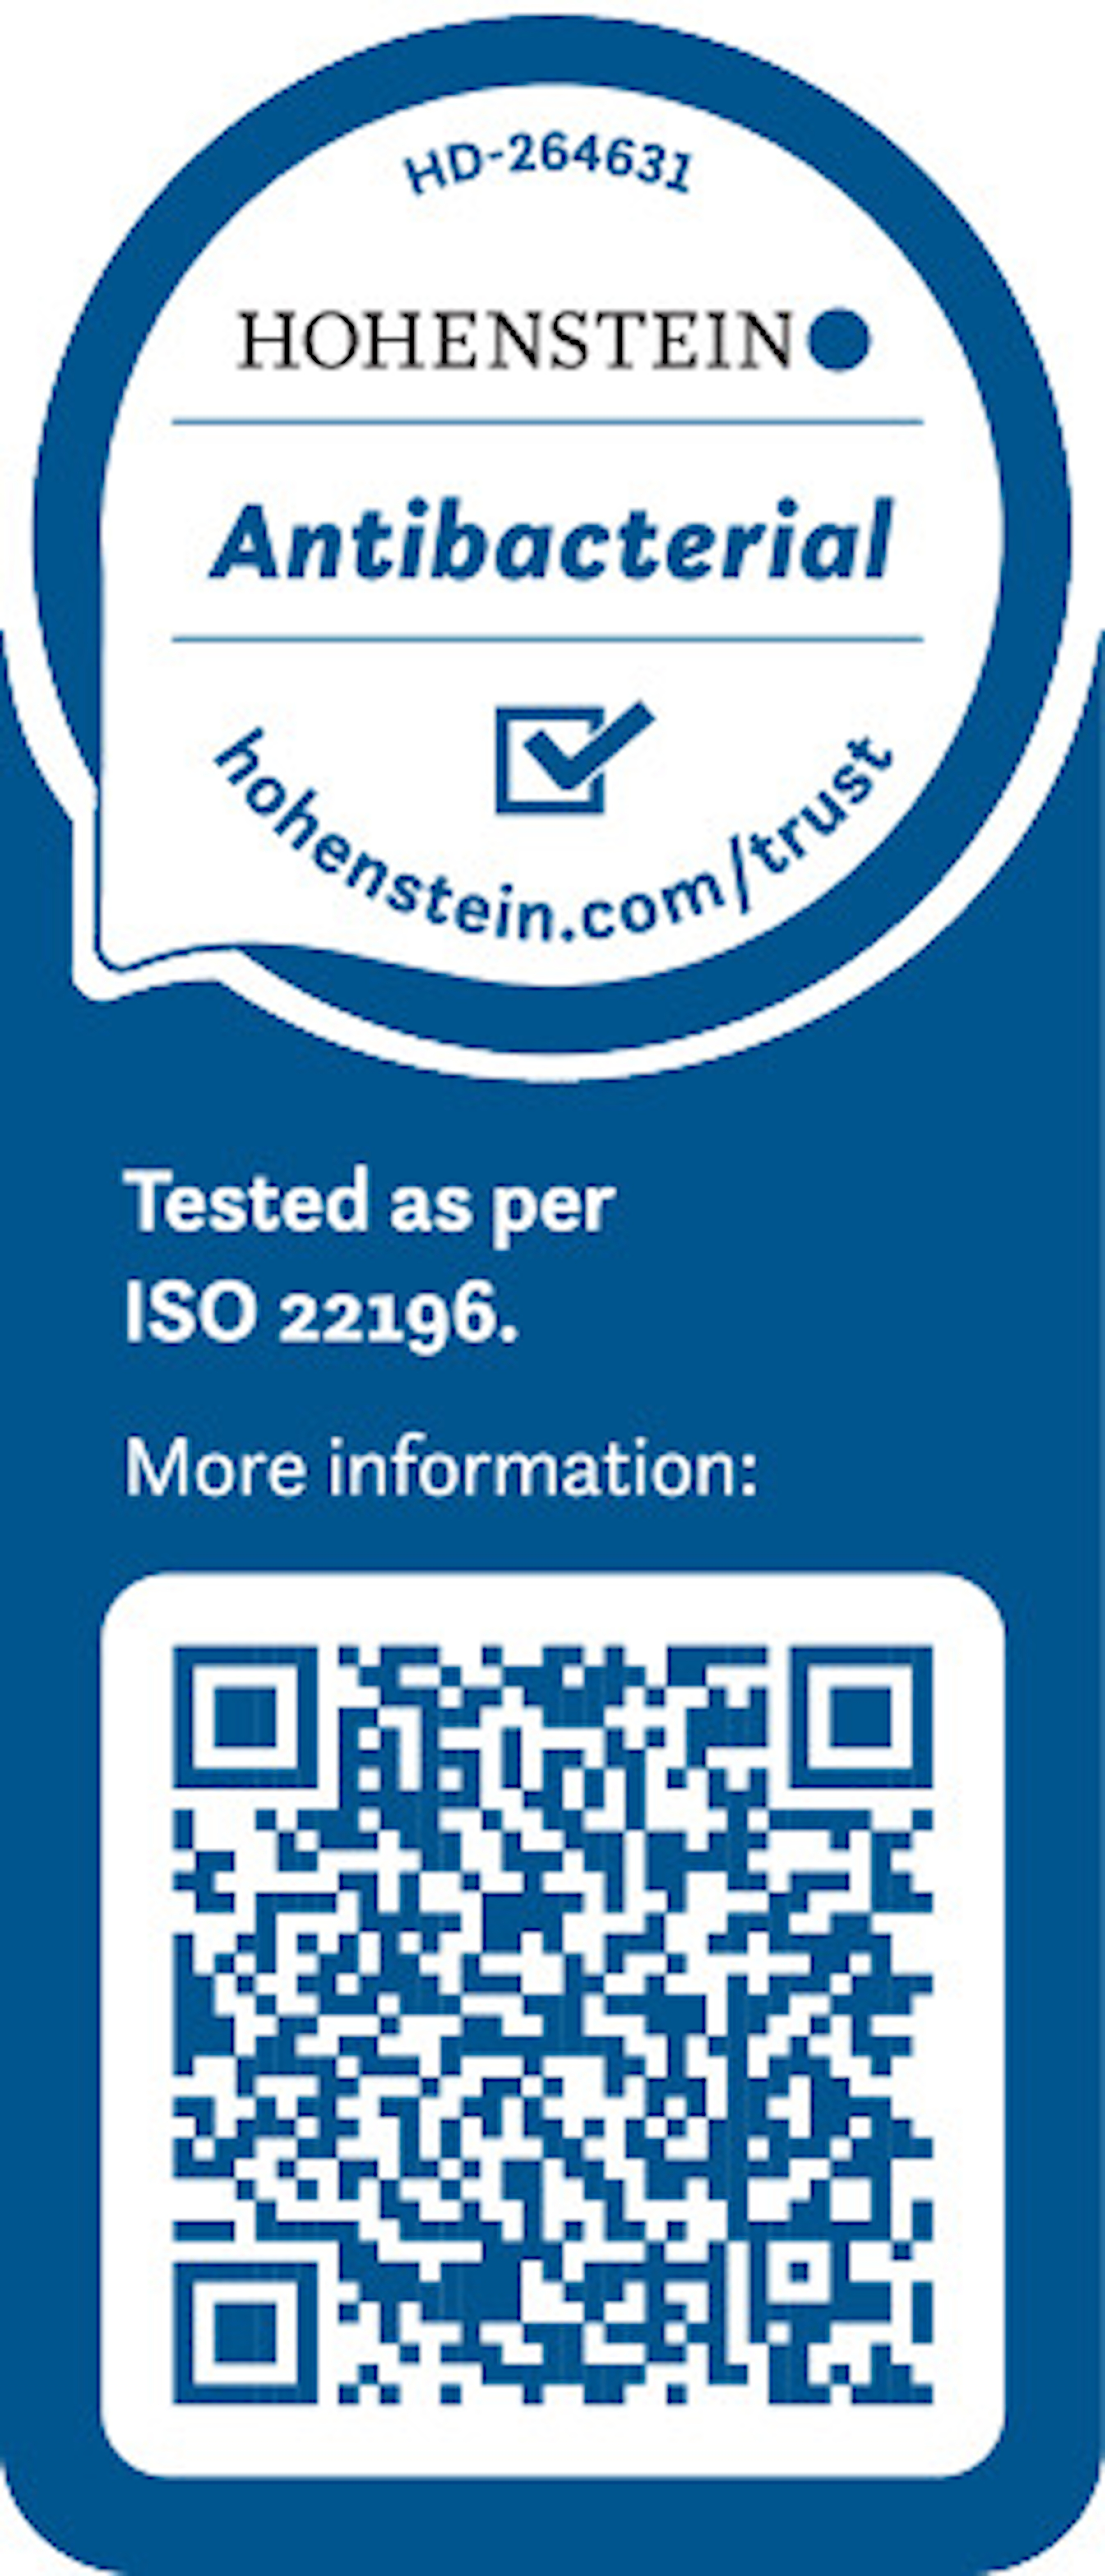 Certificato dell’Istituto Hohenstein